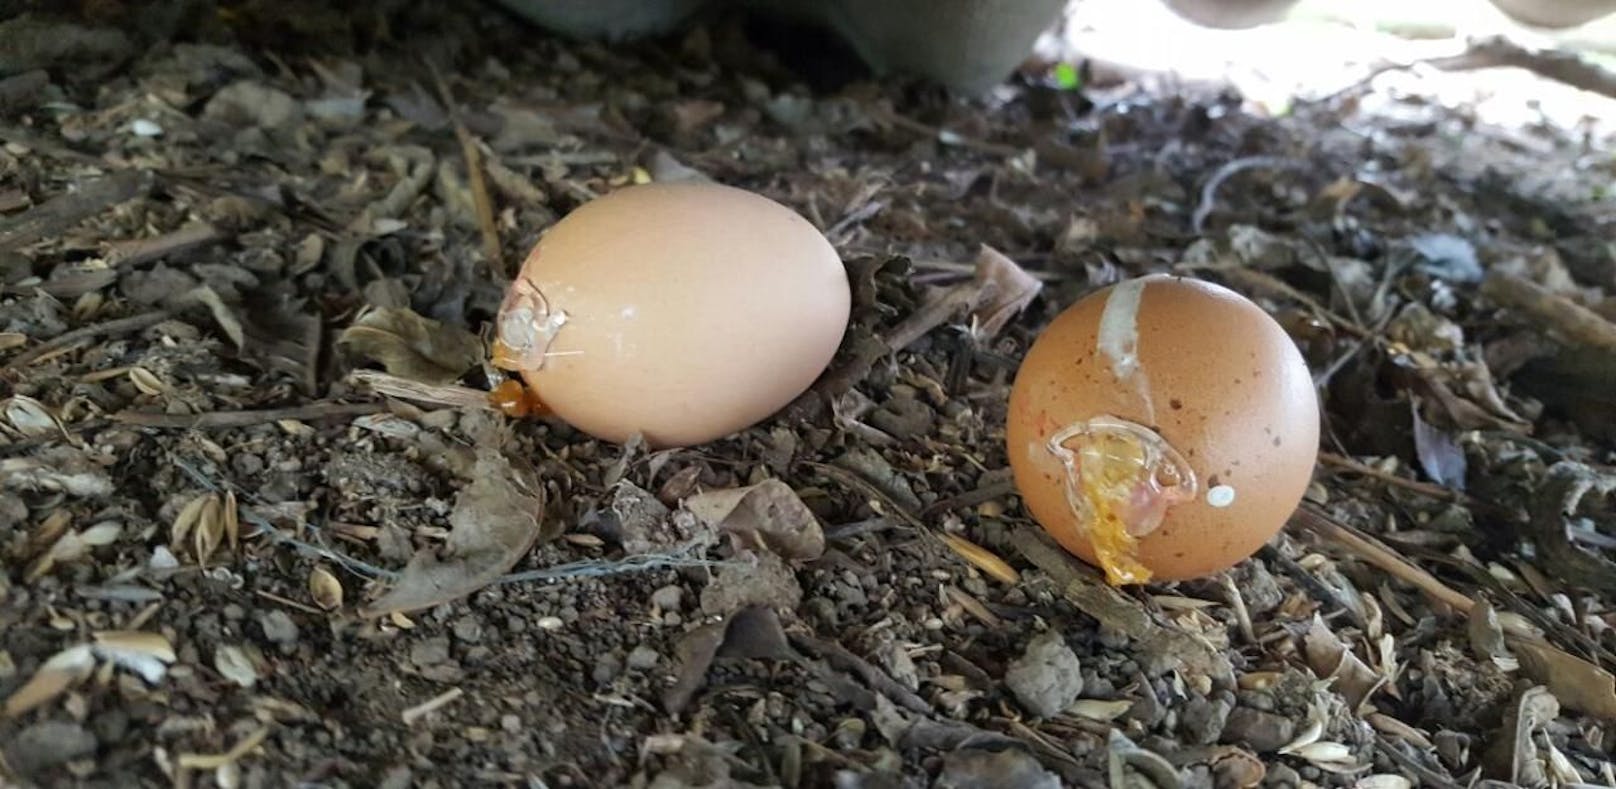 Tierhasser präparierte zwei Eier mit Nervengift